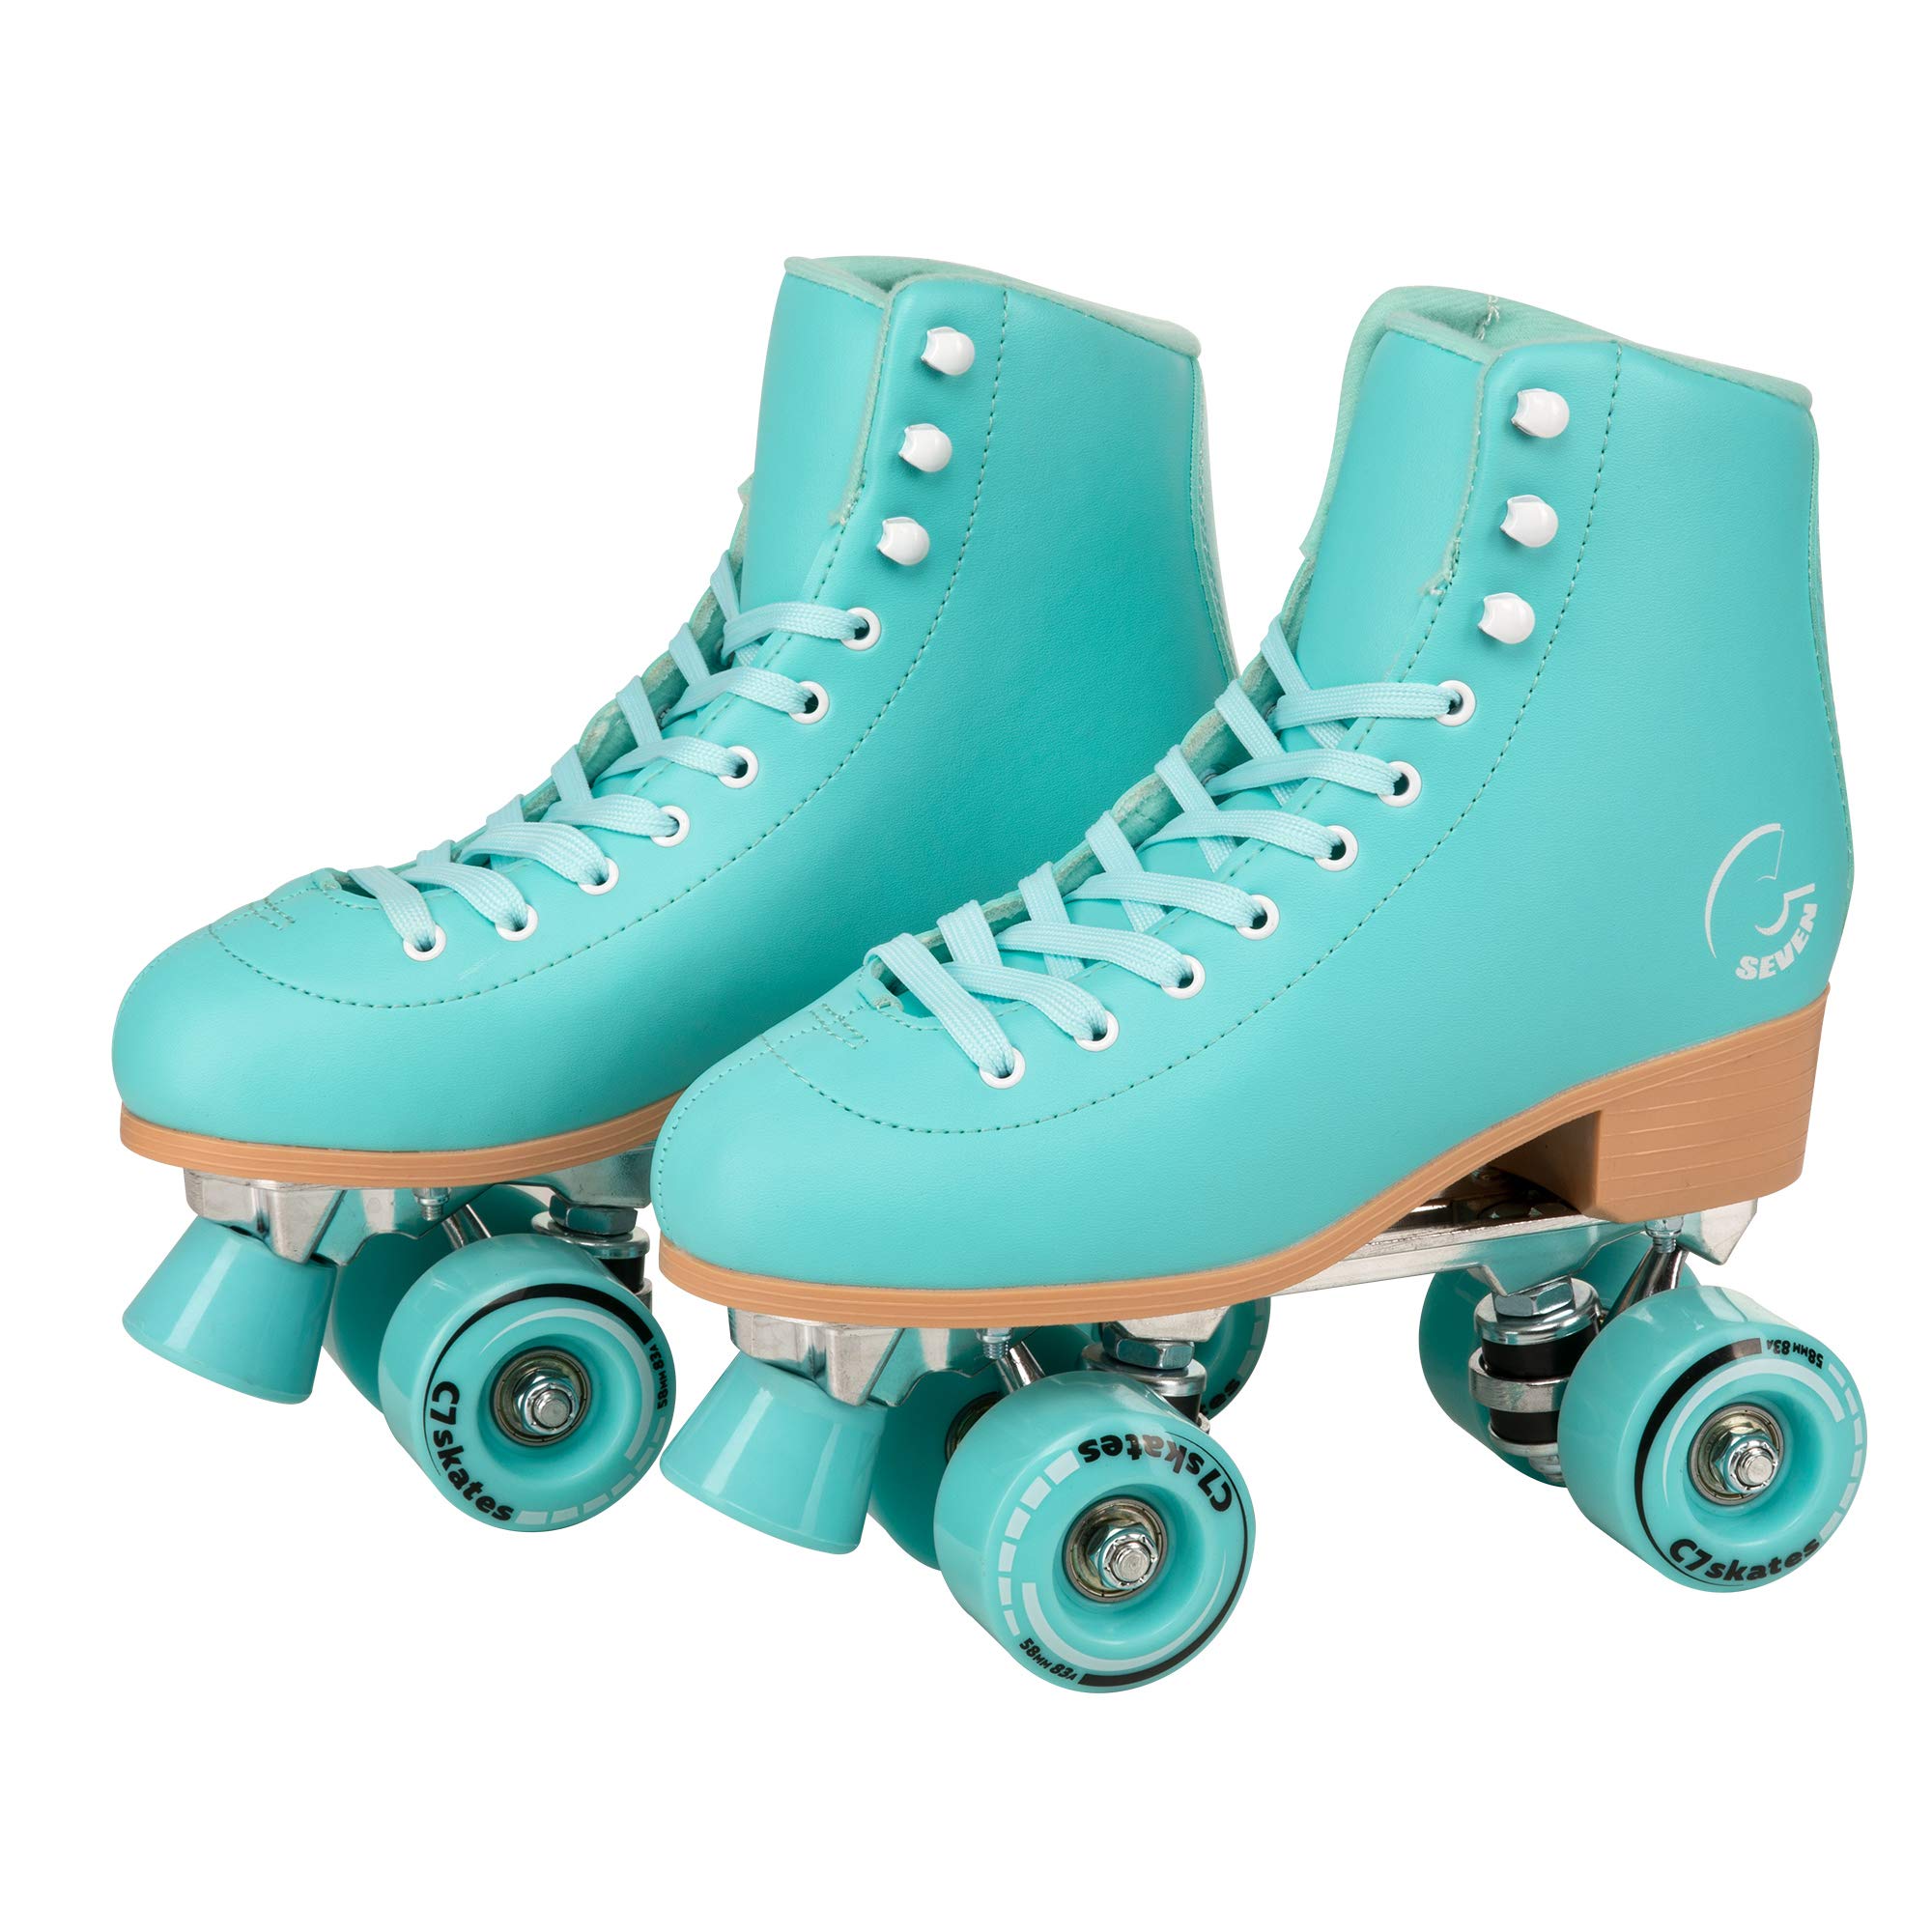 C SEVEN 소녀와 성인을 위한 C7skates 귀여운 롤러 스케이트